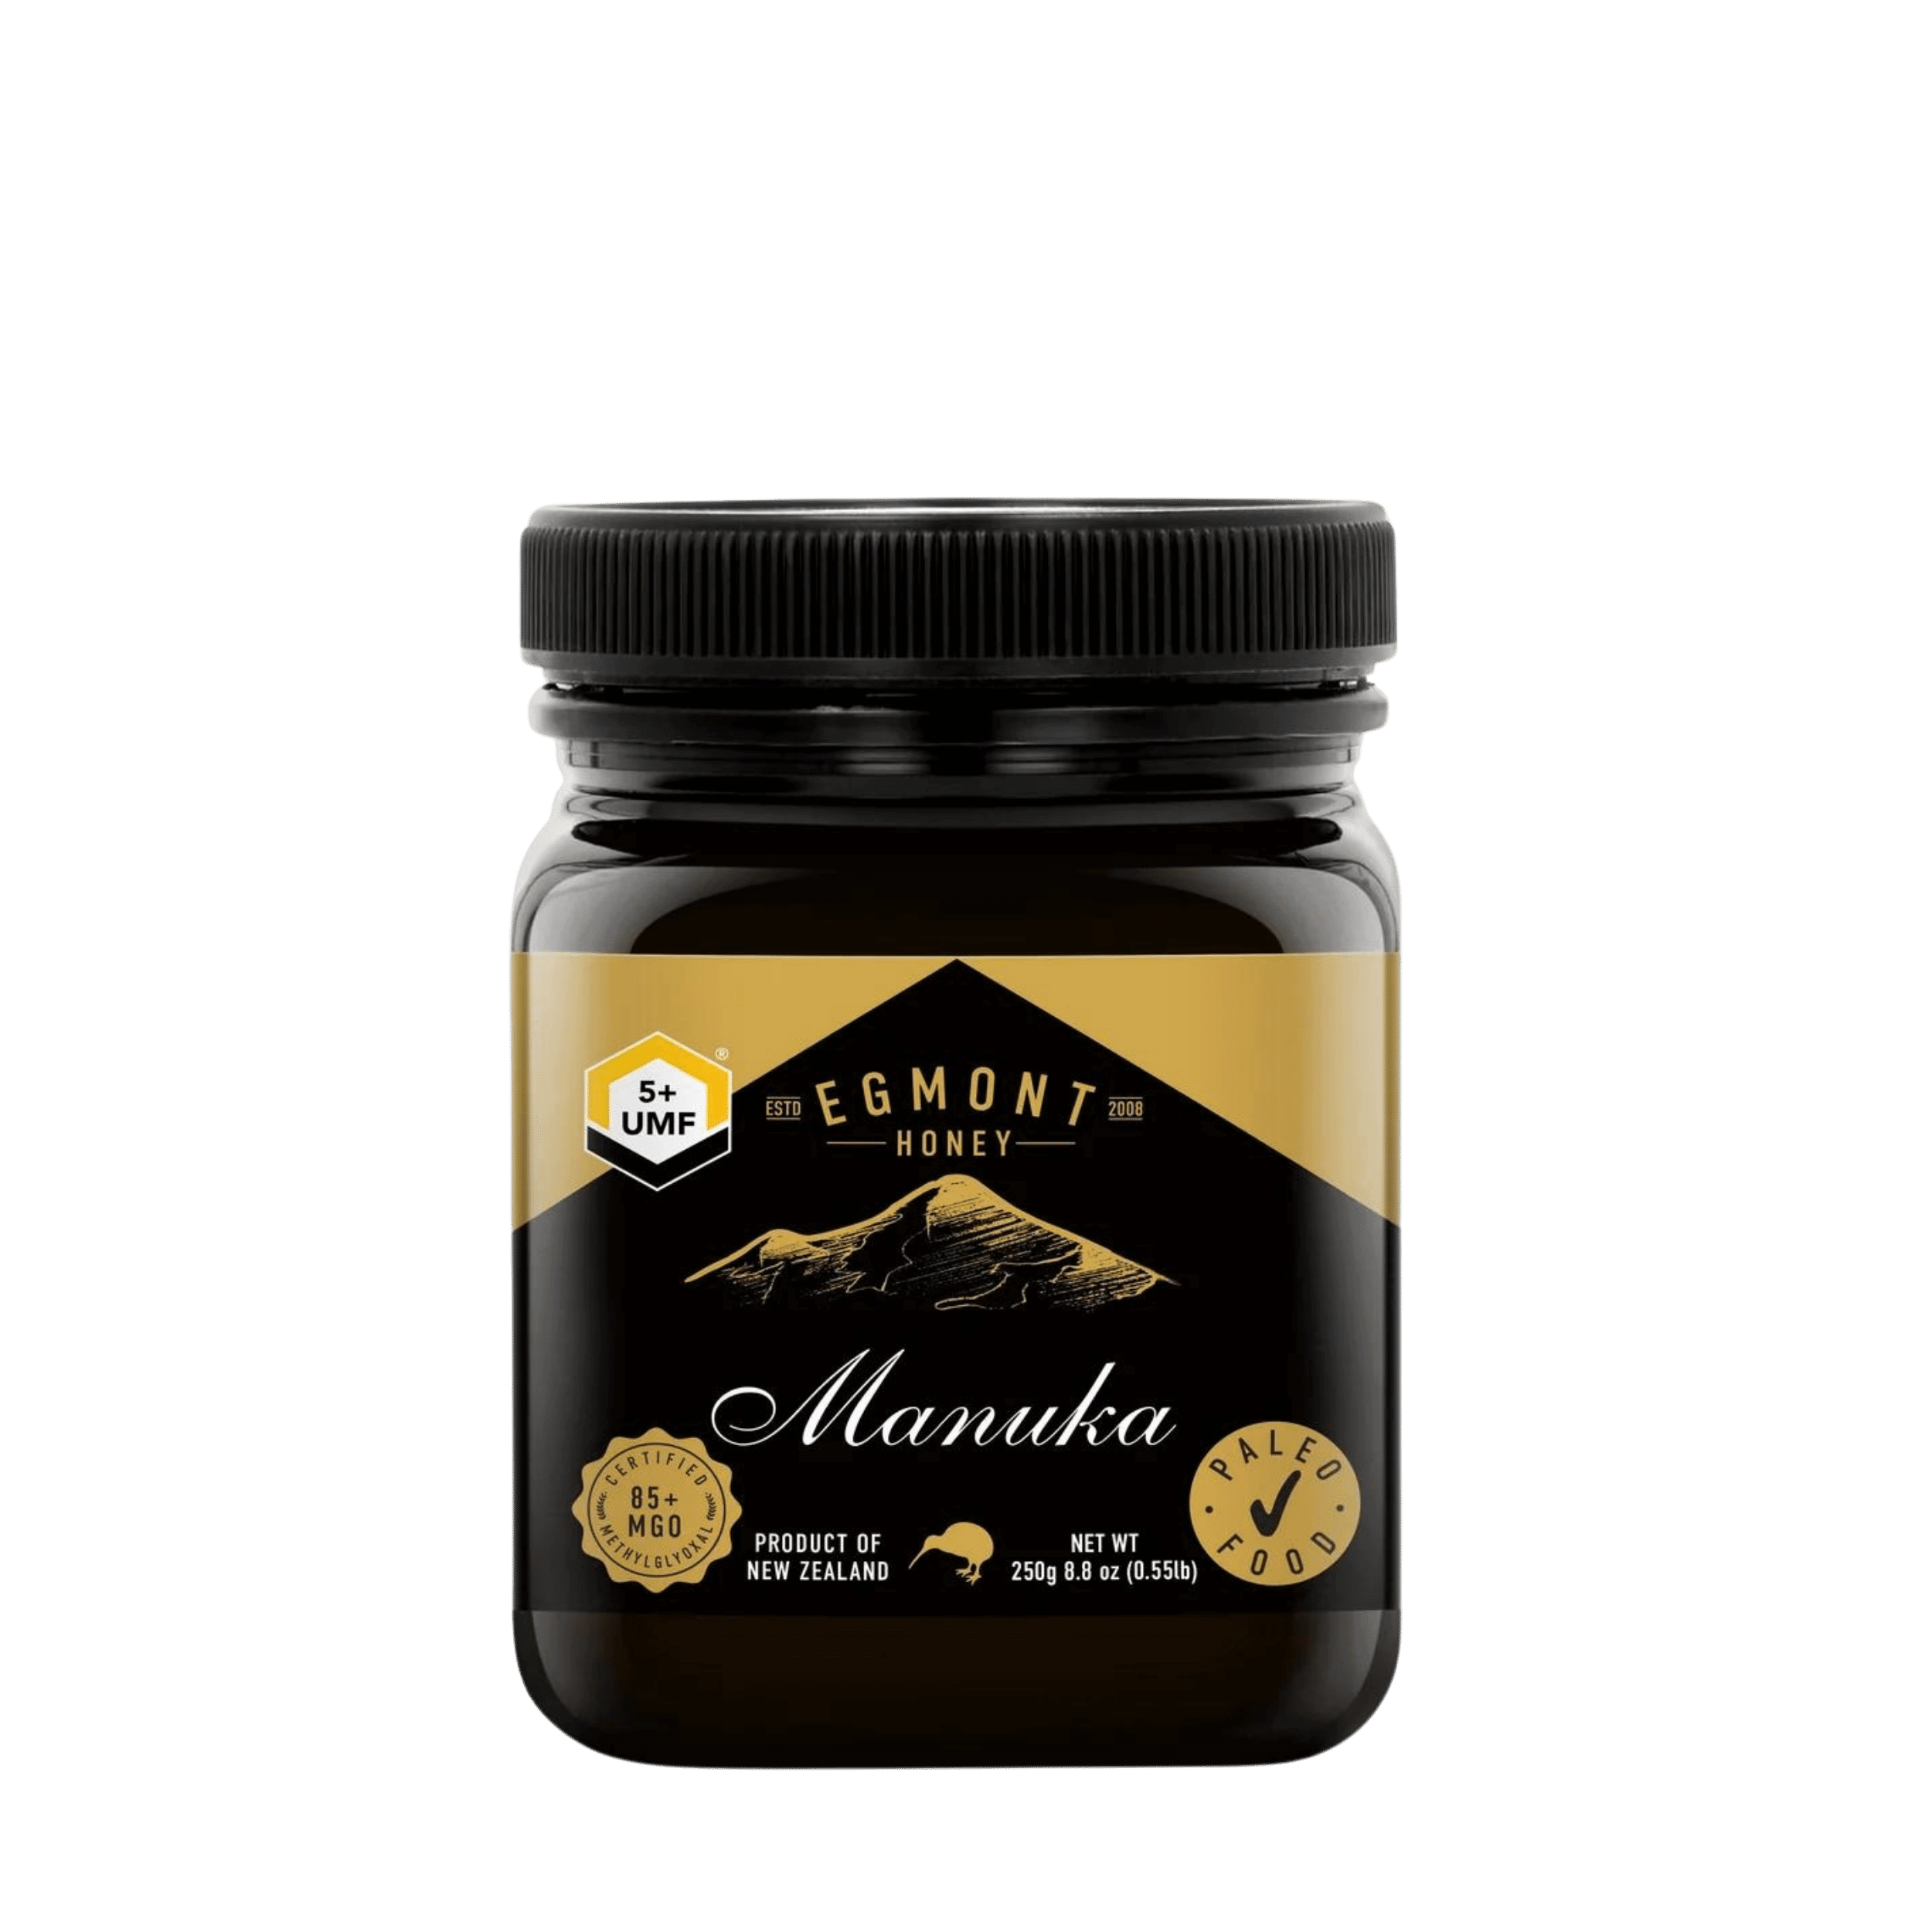 Egmont Manuka Honey UMF 5 250g 1